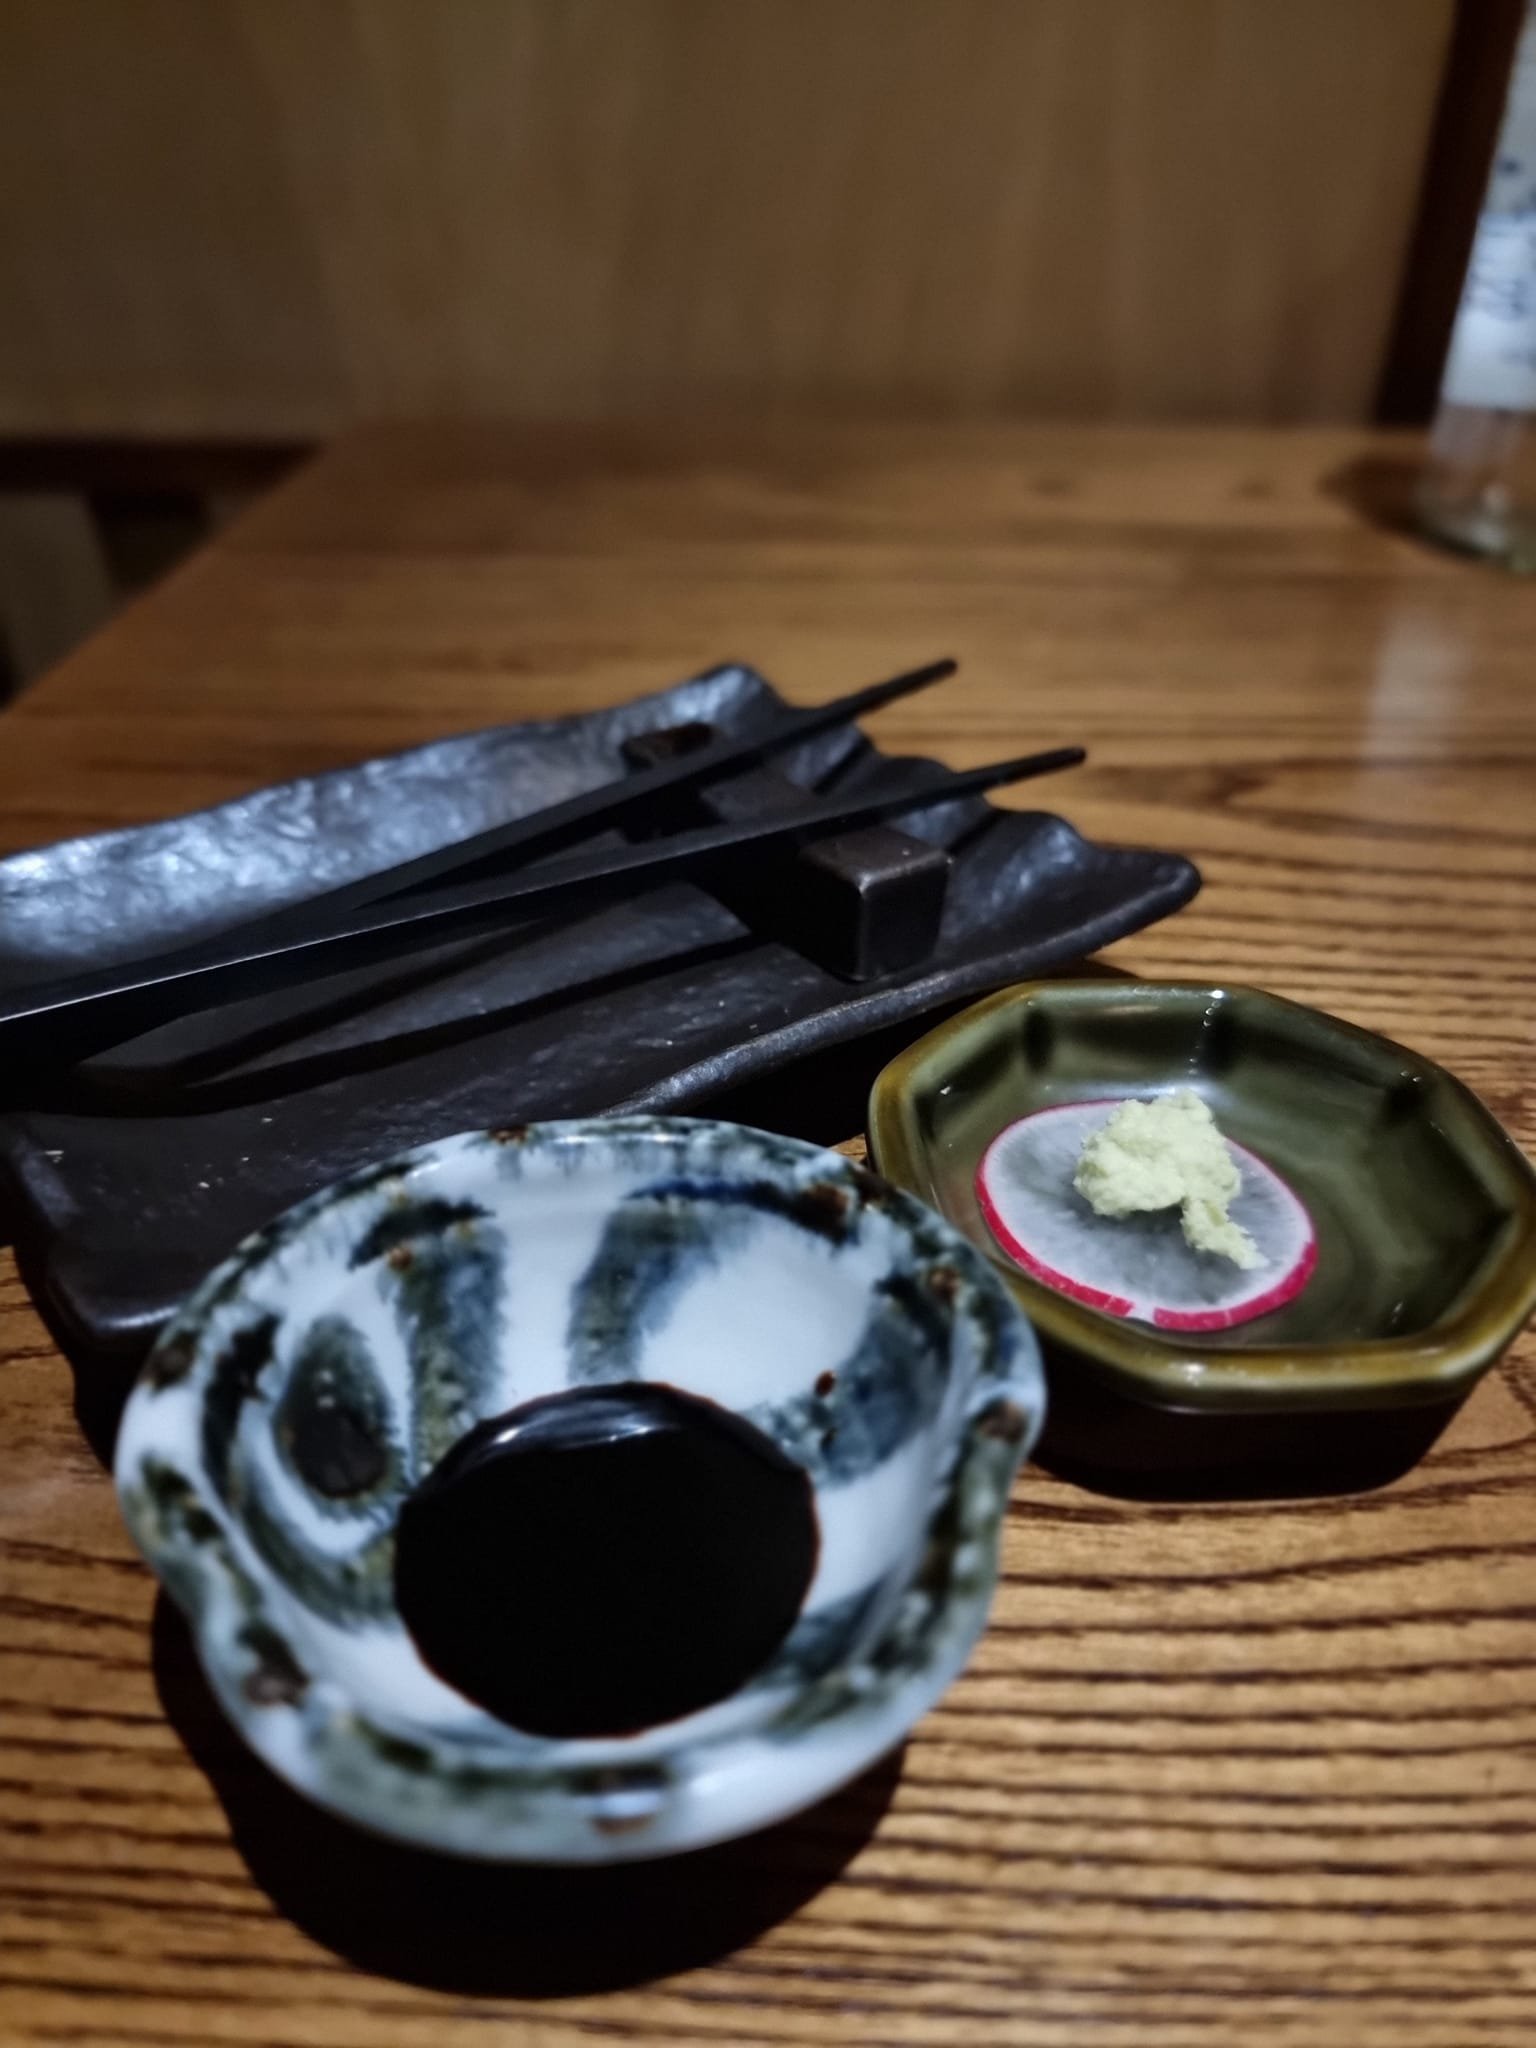 kibako wasabi plated.jpg